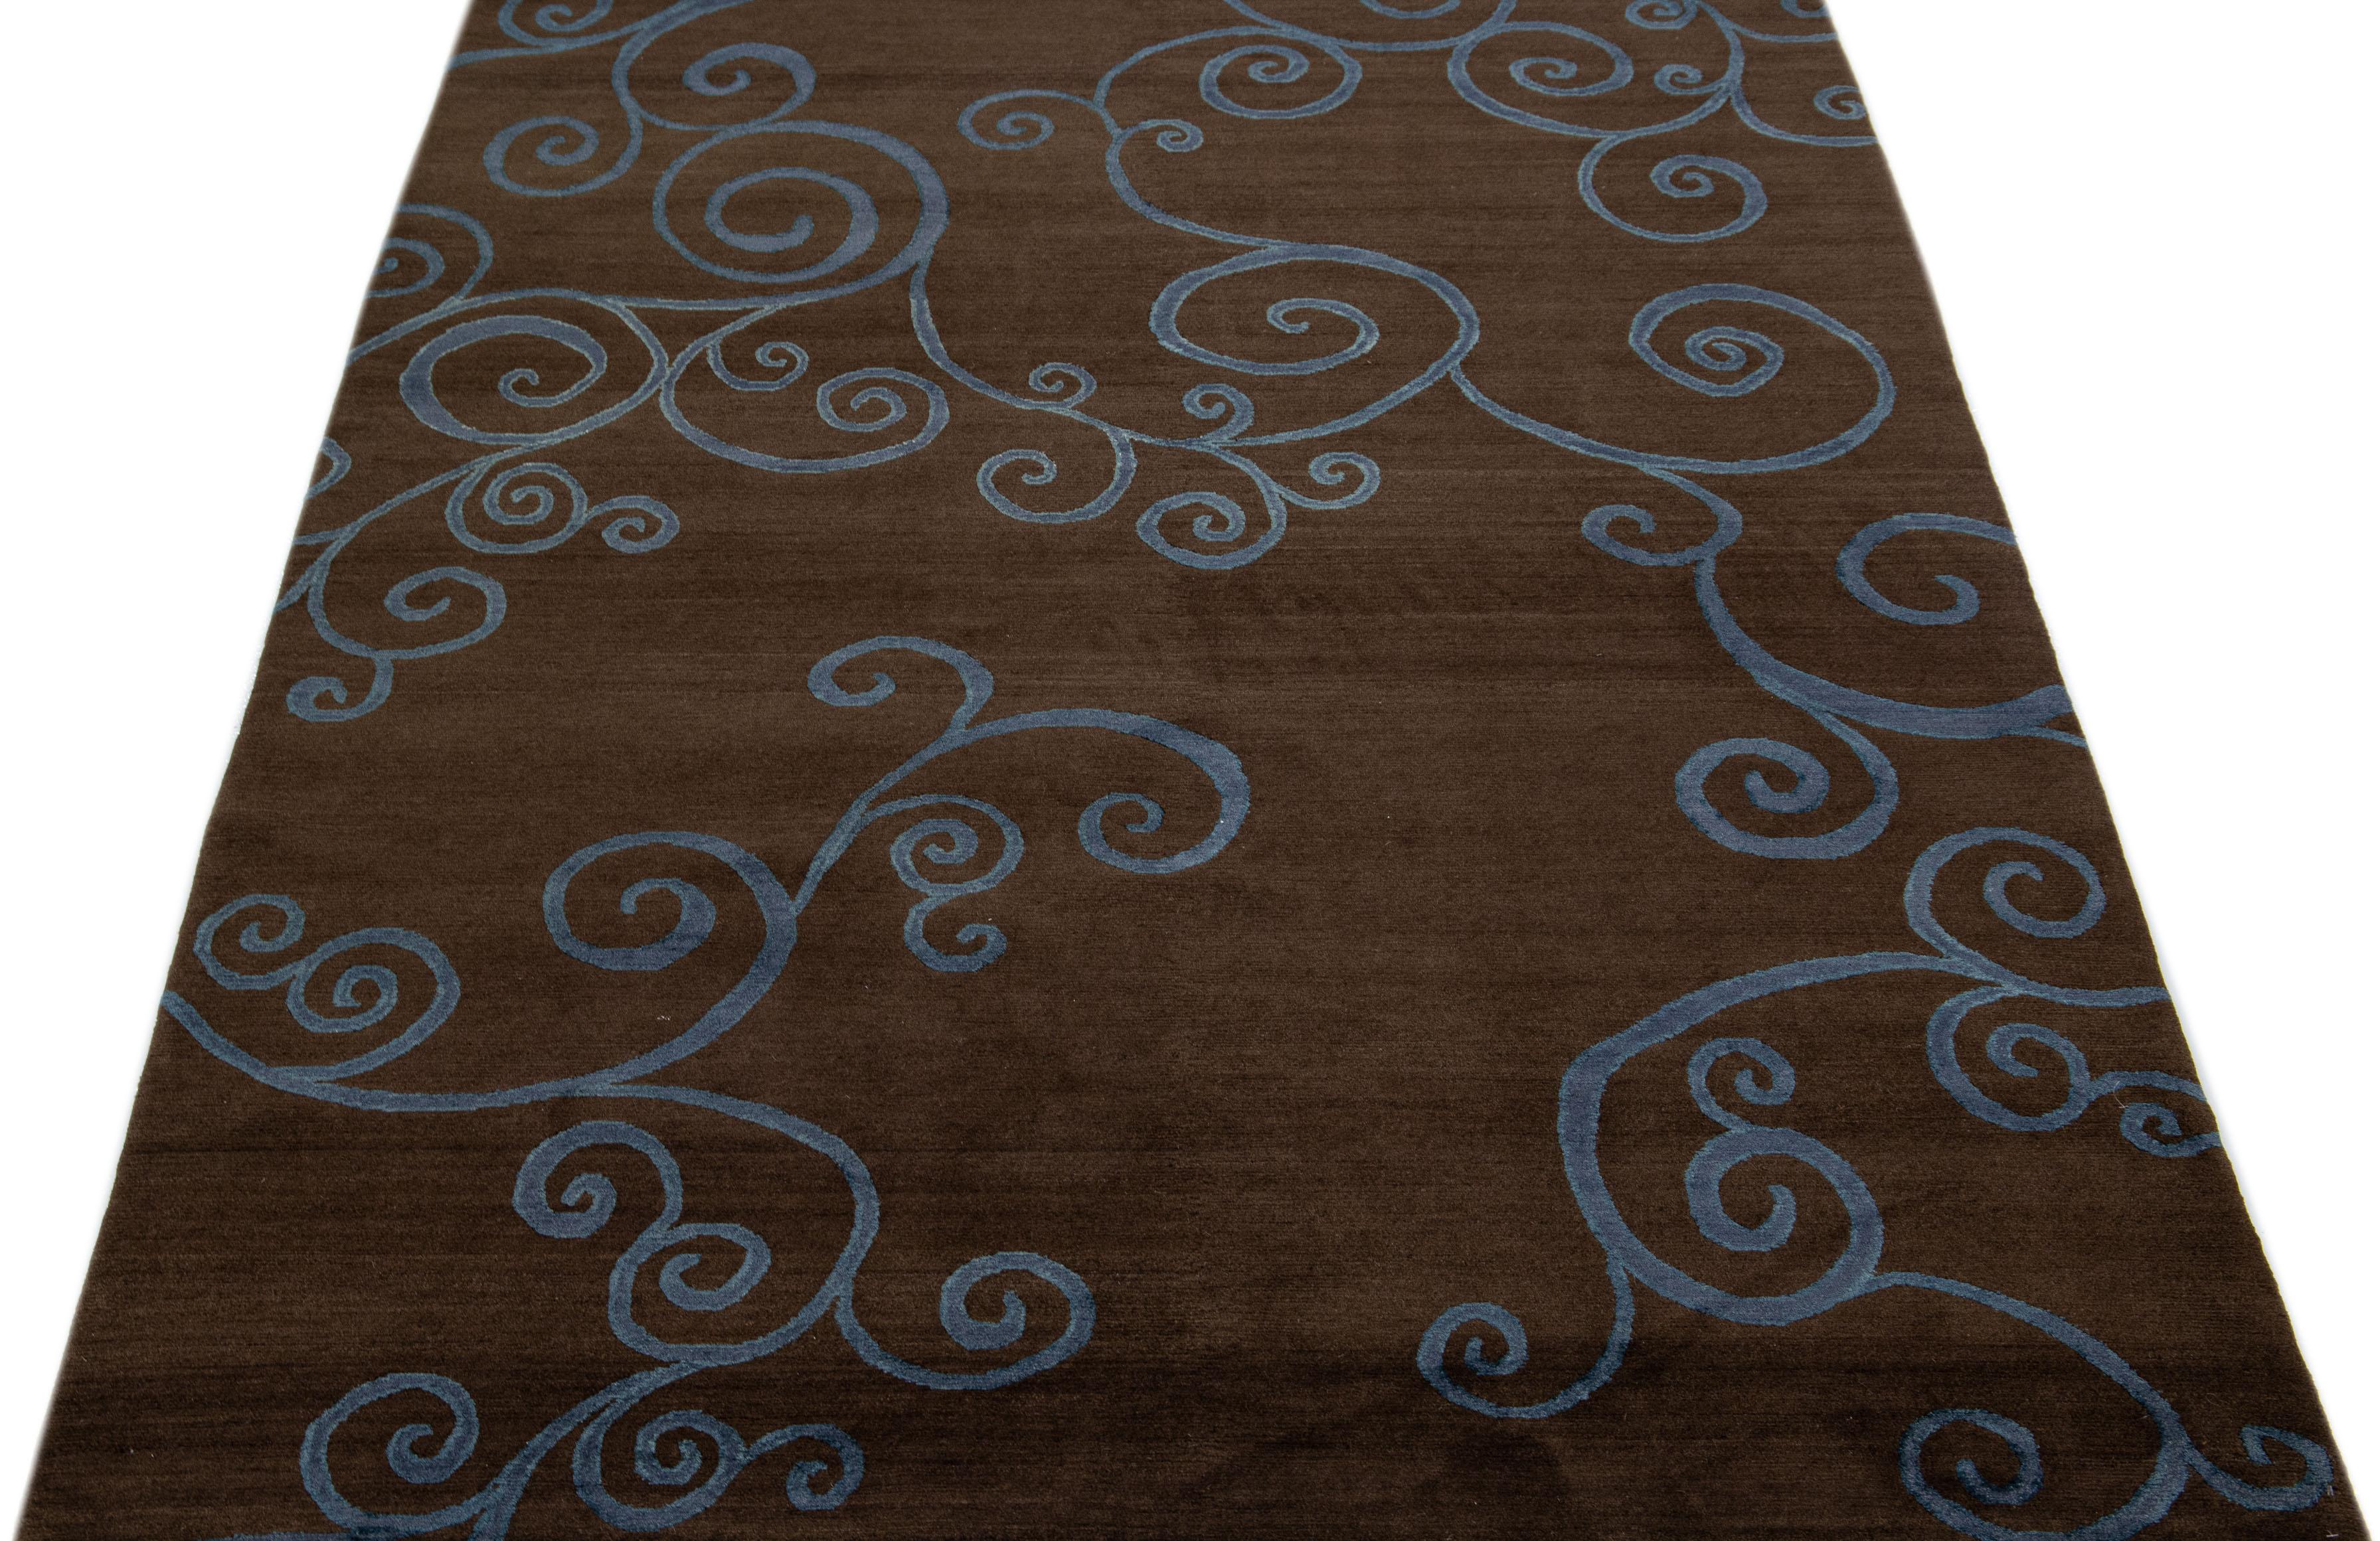 Ce tapis tibétain contemporain est confectionné à la main avec de la laine et de la soie et présente un champ de couleurs marron saisissant. Un motif géométrique abstrait en bleu sur tout le pourtour ajoute à son charme.

Ce tapis mesure 6' x 9'.